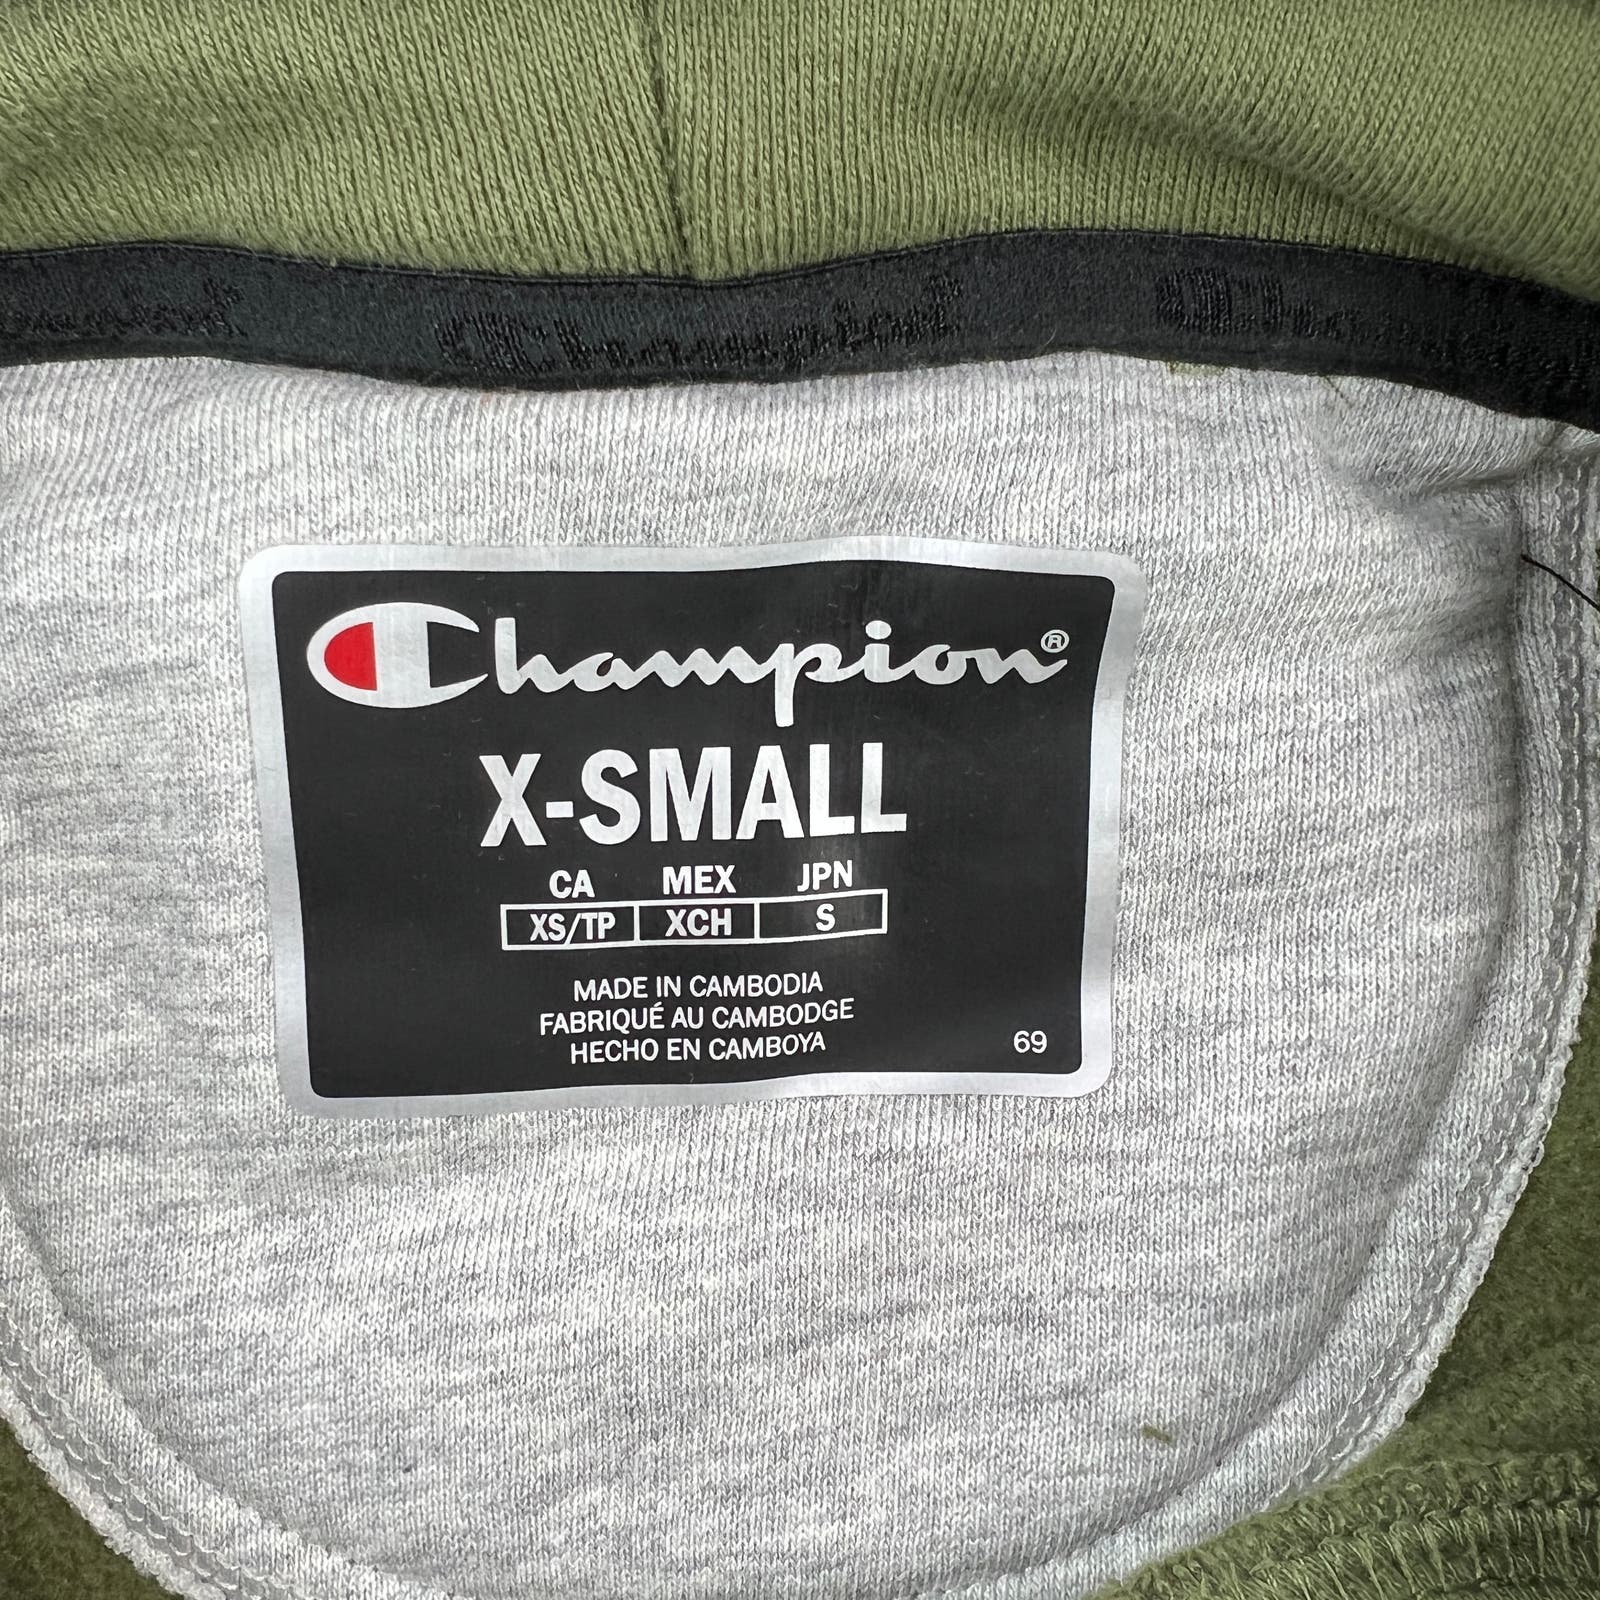 Champion Men Olive Hood US XS Super Fleece Activewear